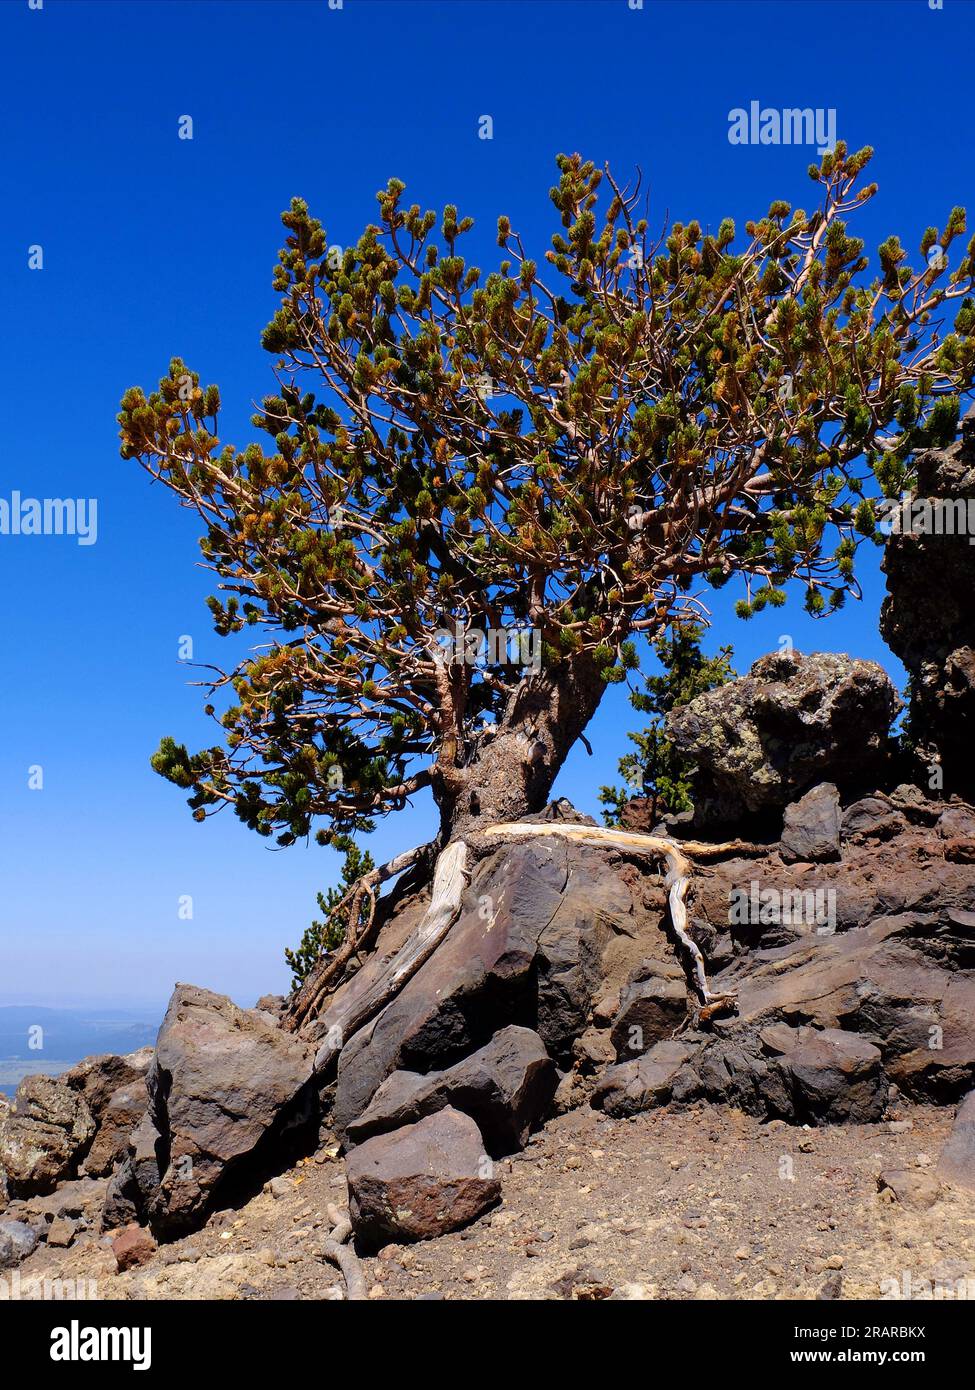 Pino Cono de cerdas que crece en alta elevación en la ladera de la montaña aferrándose a la roca con raíces expuestas Foto de stock